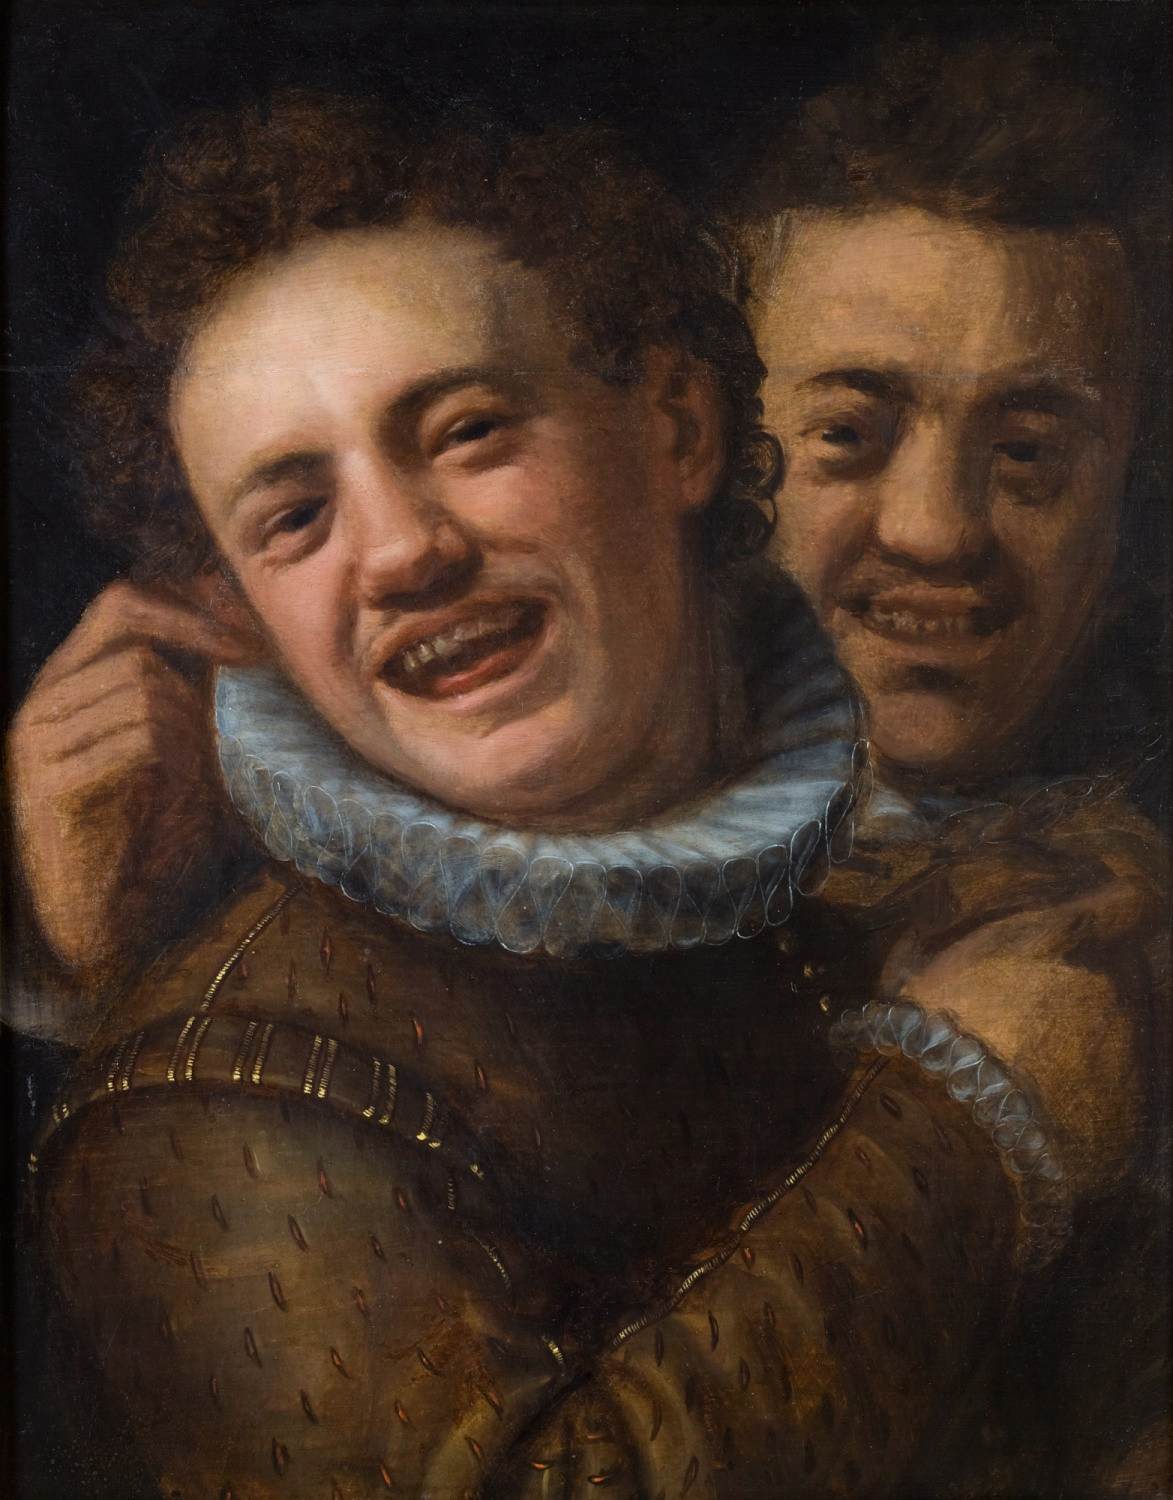 Hans von Aachen, "Deux hommes en train de rire", 1574, huile sur bois, Musée Archiépiscopal, Kromeriz (WGA)